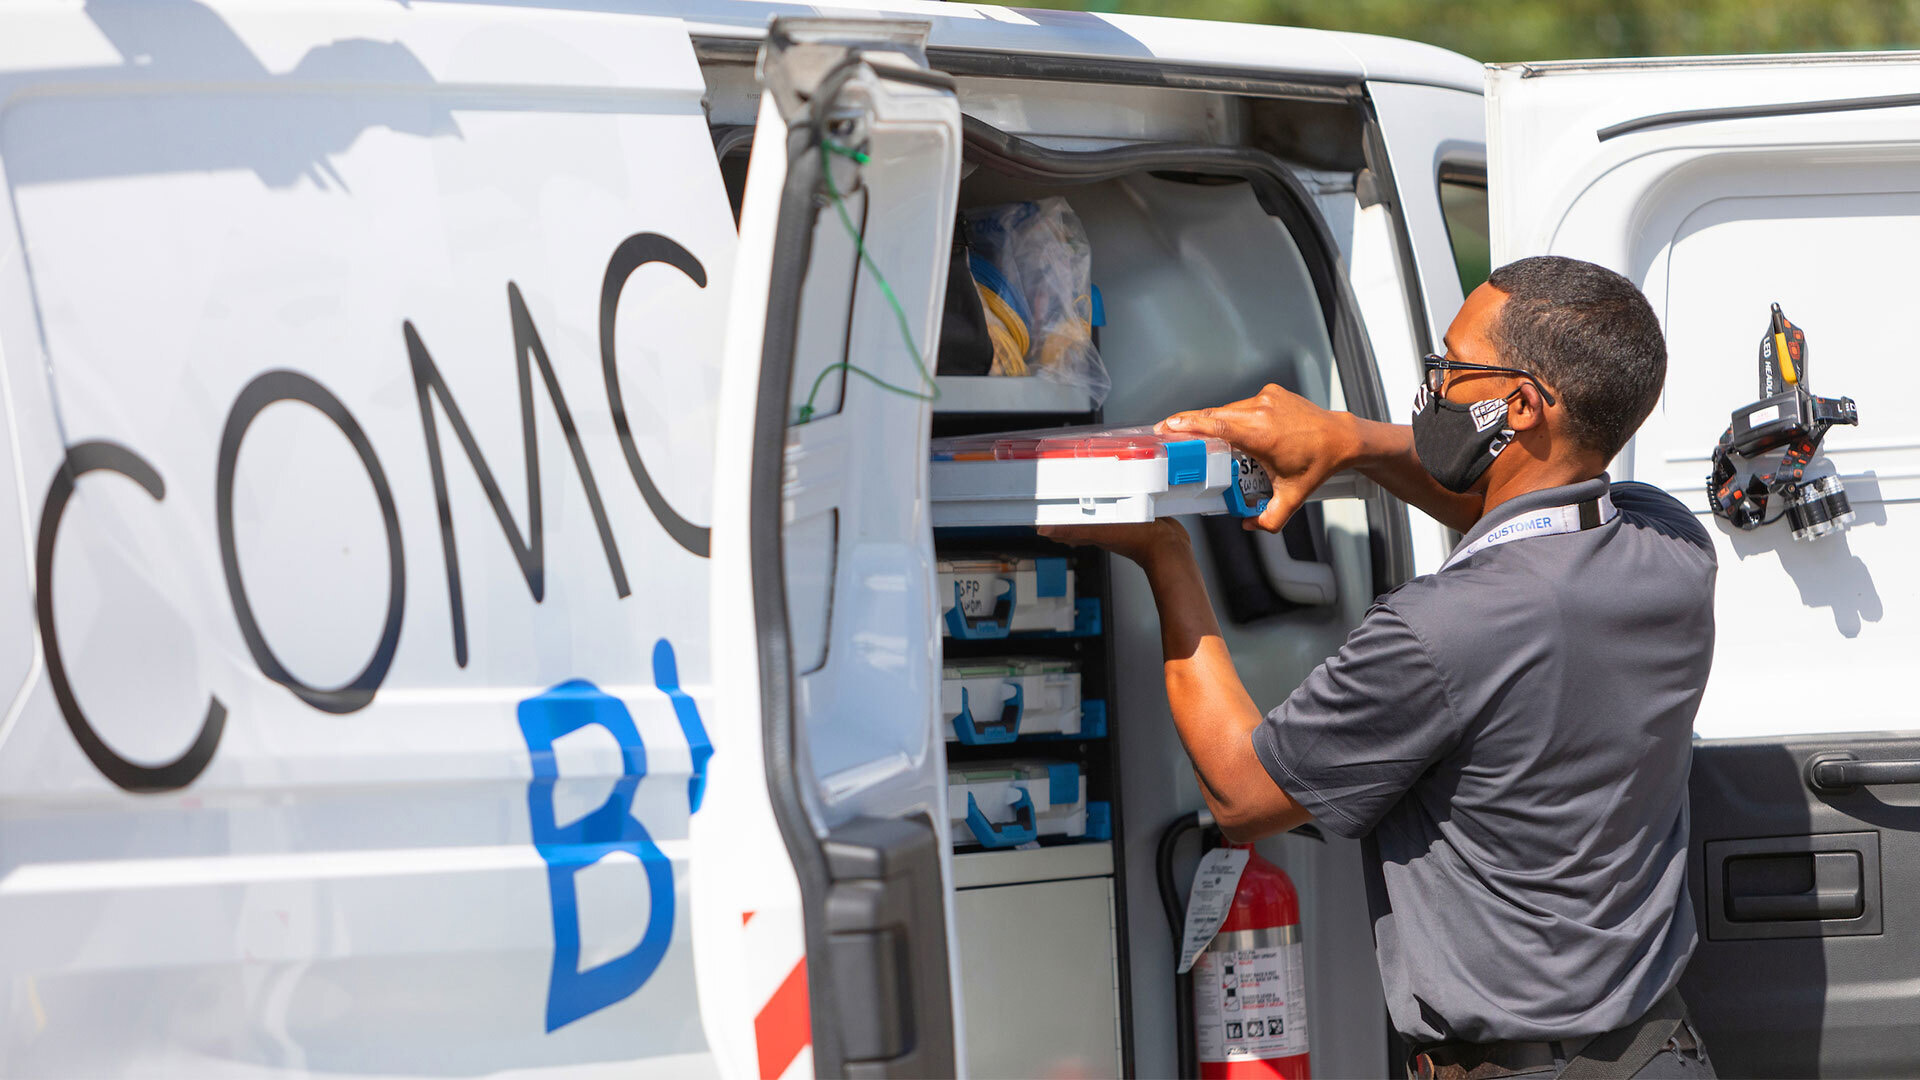 A Comcast technician unloads supplies from a van